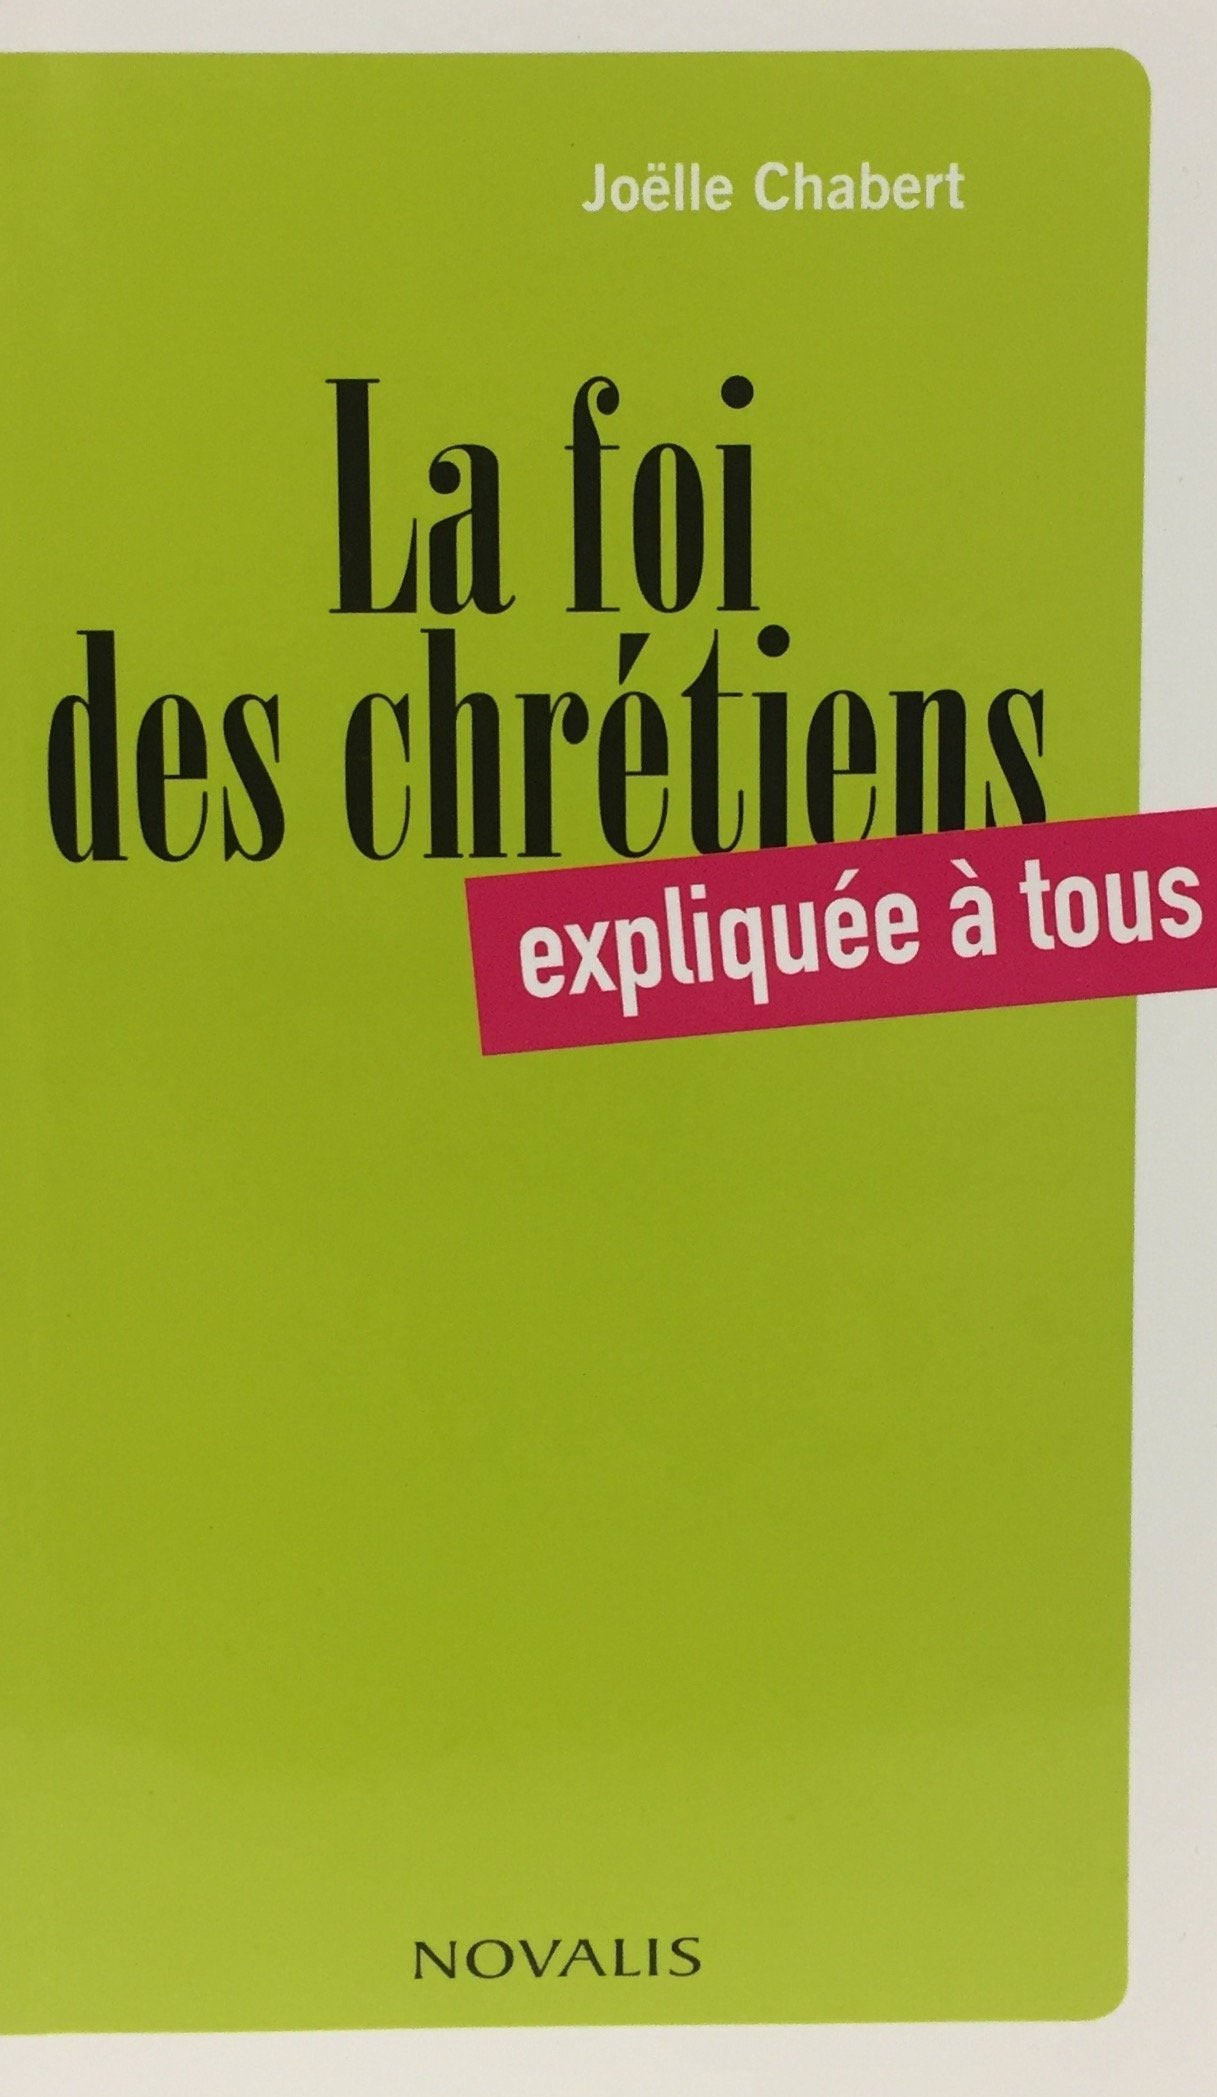 Livre ISBN 2895079382 La foi des chrétiens expliquée à tous (Joëlle Chabert)